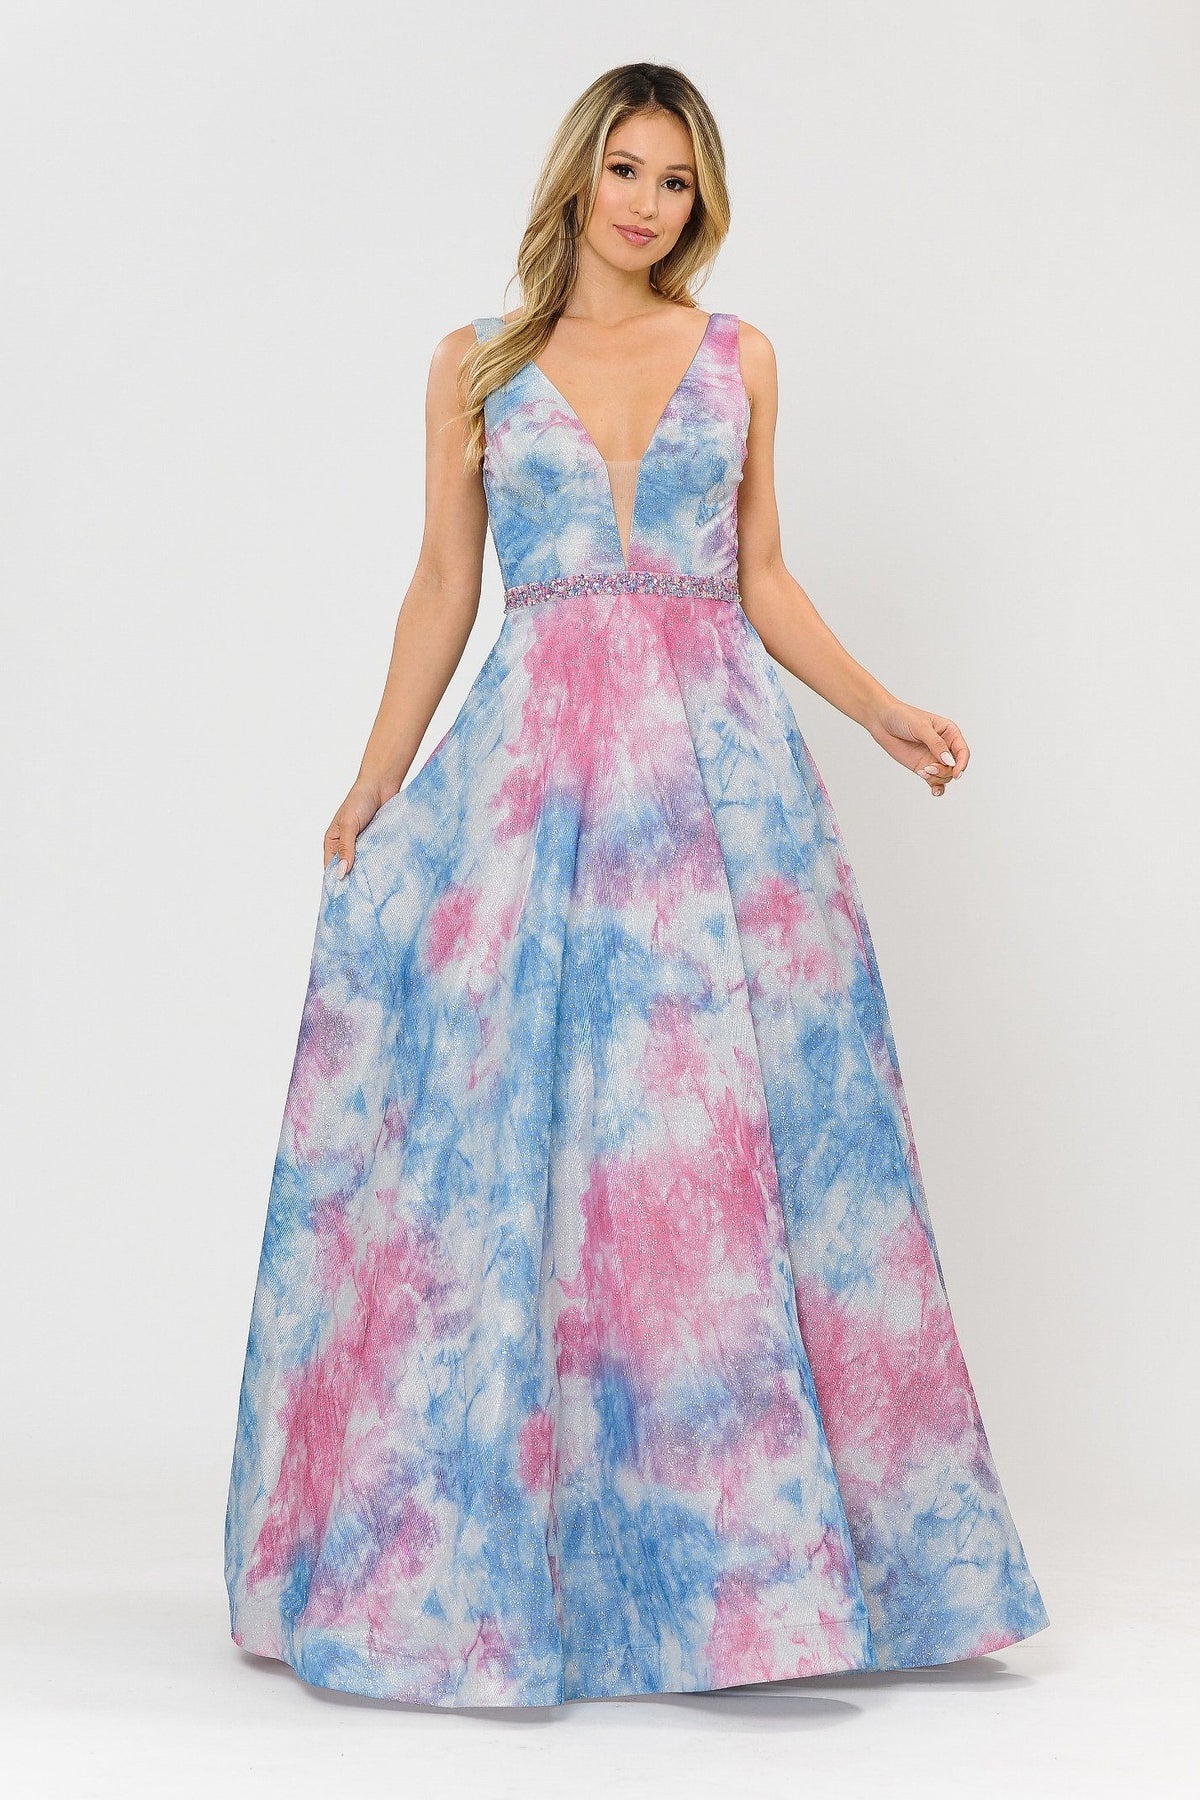 Long A-line Glitter Tie Dye Formal Dress by Poly USA 8346 – ABC Fashion